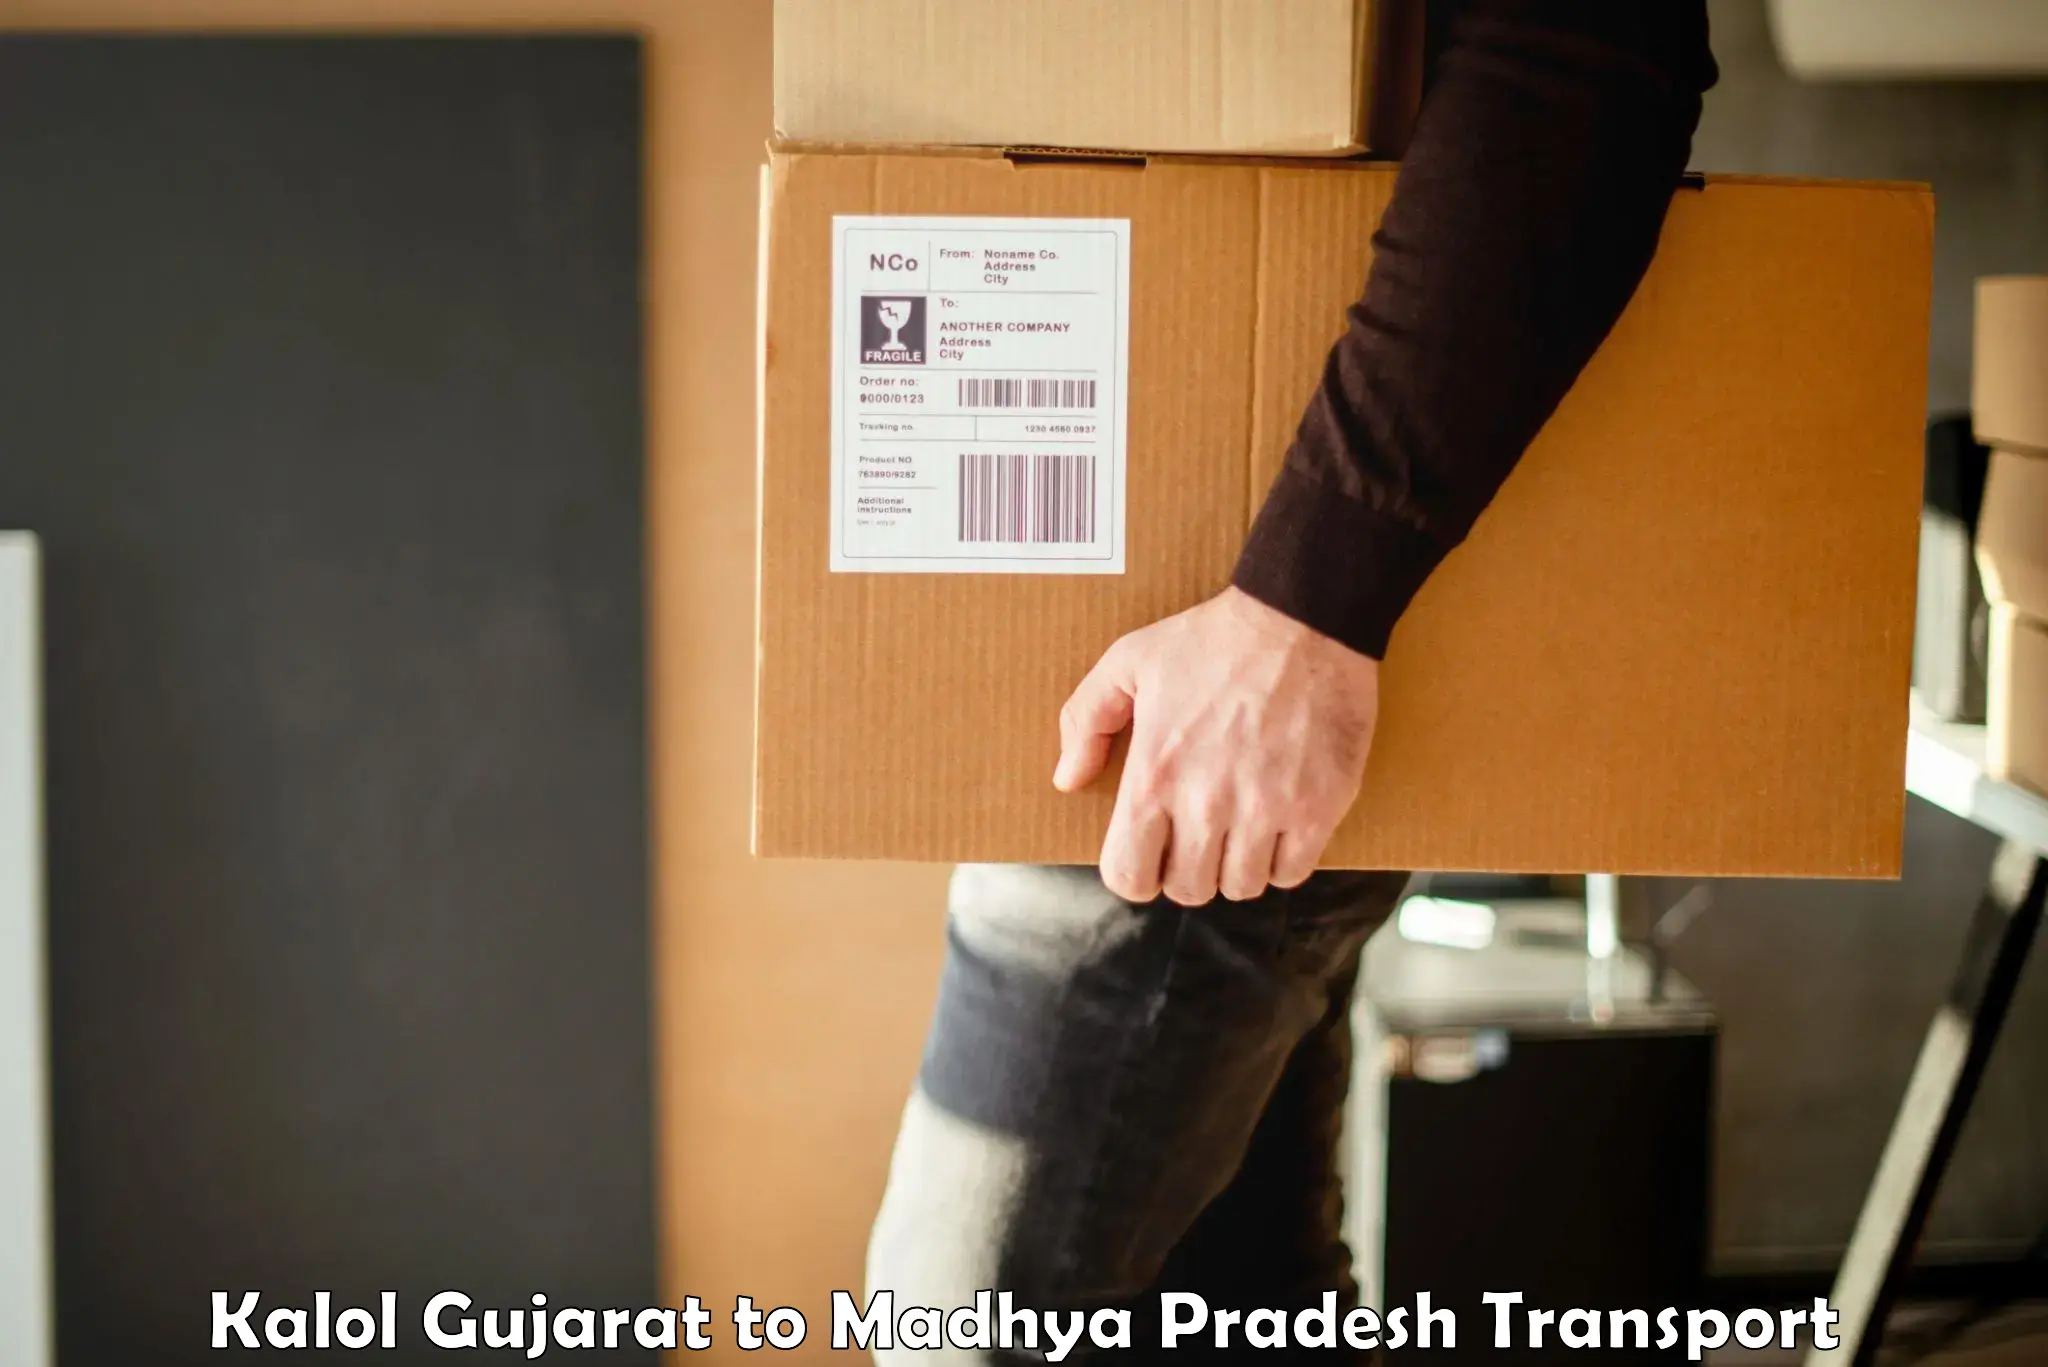 Daily parcel service transport Kalol Gujarat to Jaisinghnagar